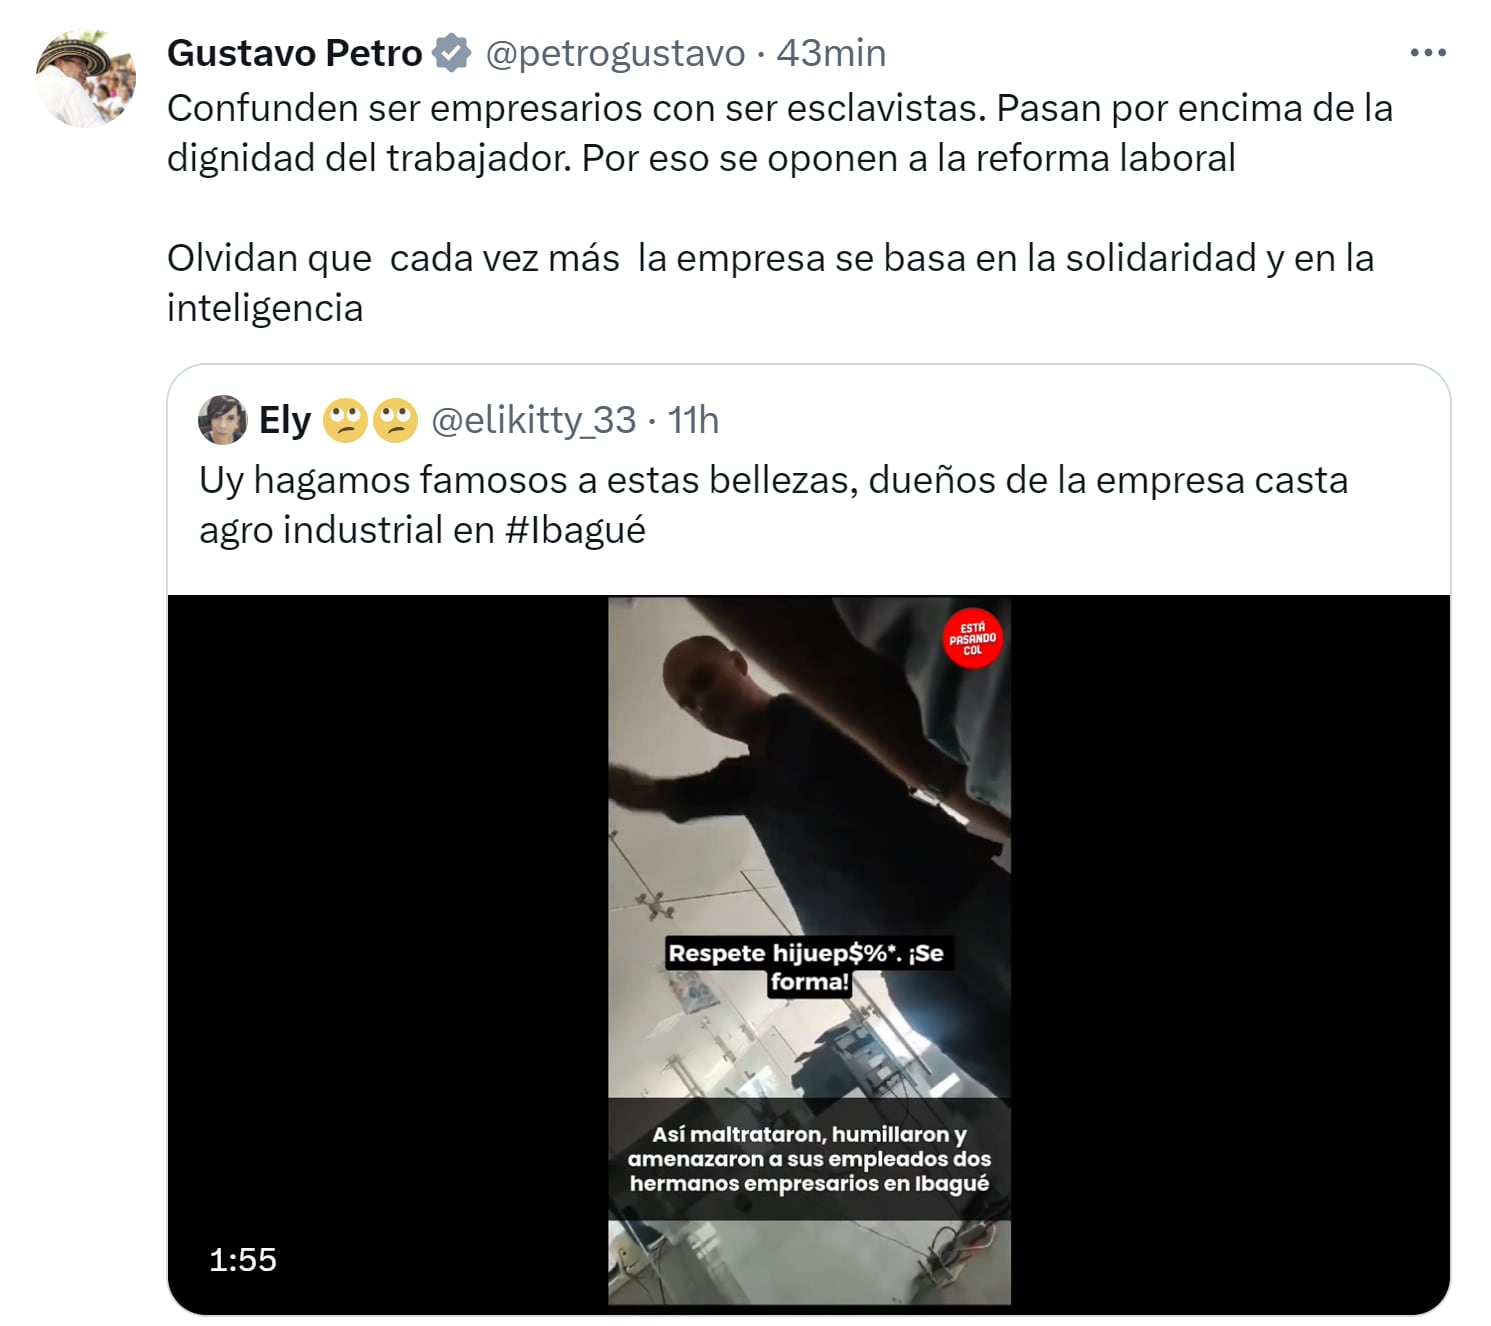 Presidente Gustavo Petro rechazó caso de maltrato laboral en Ibagué - crédito X